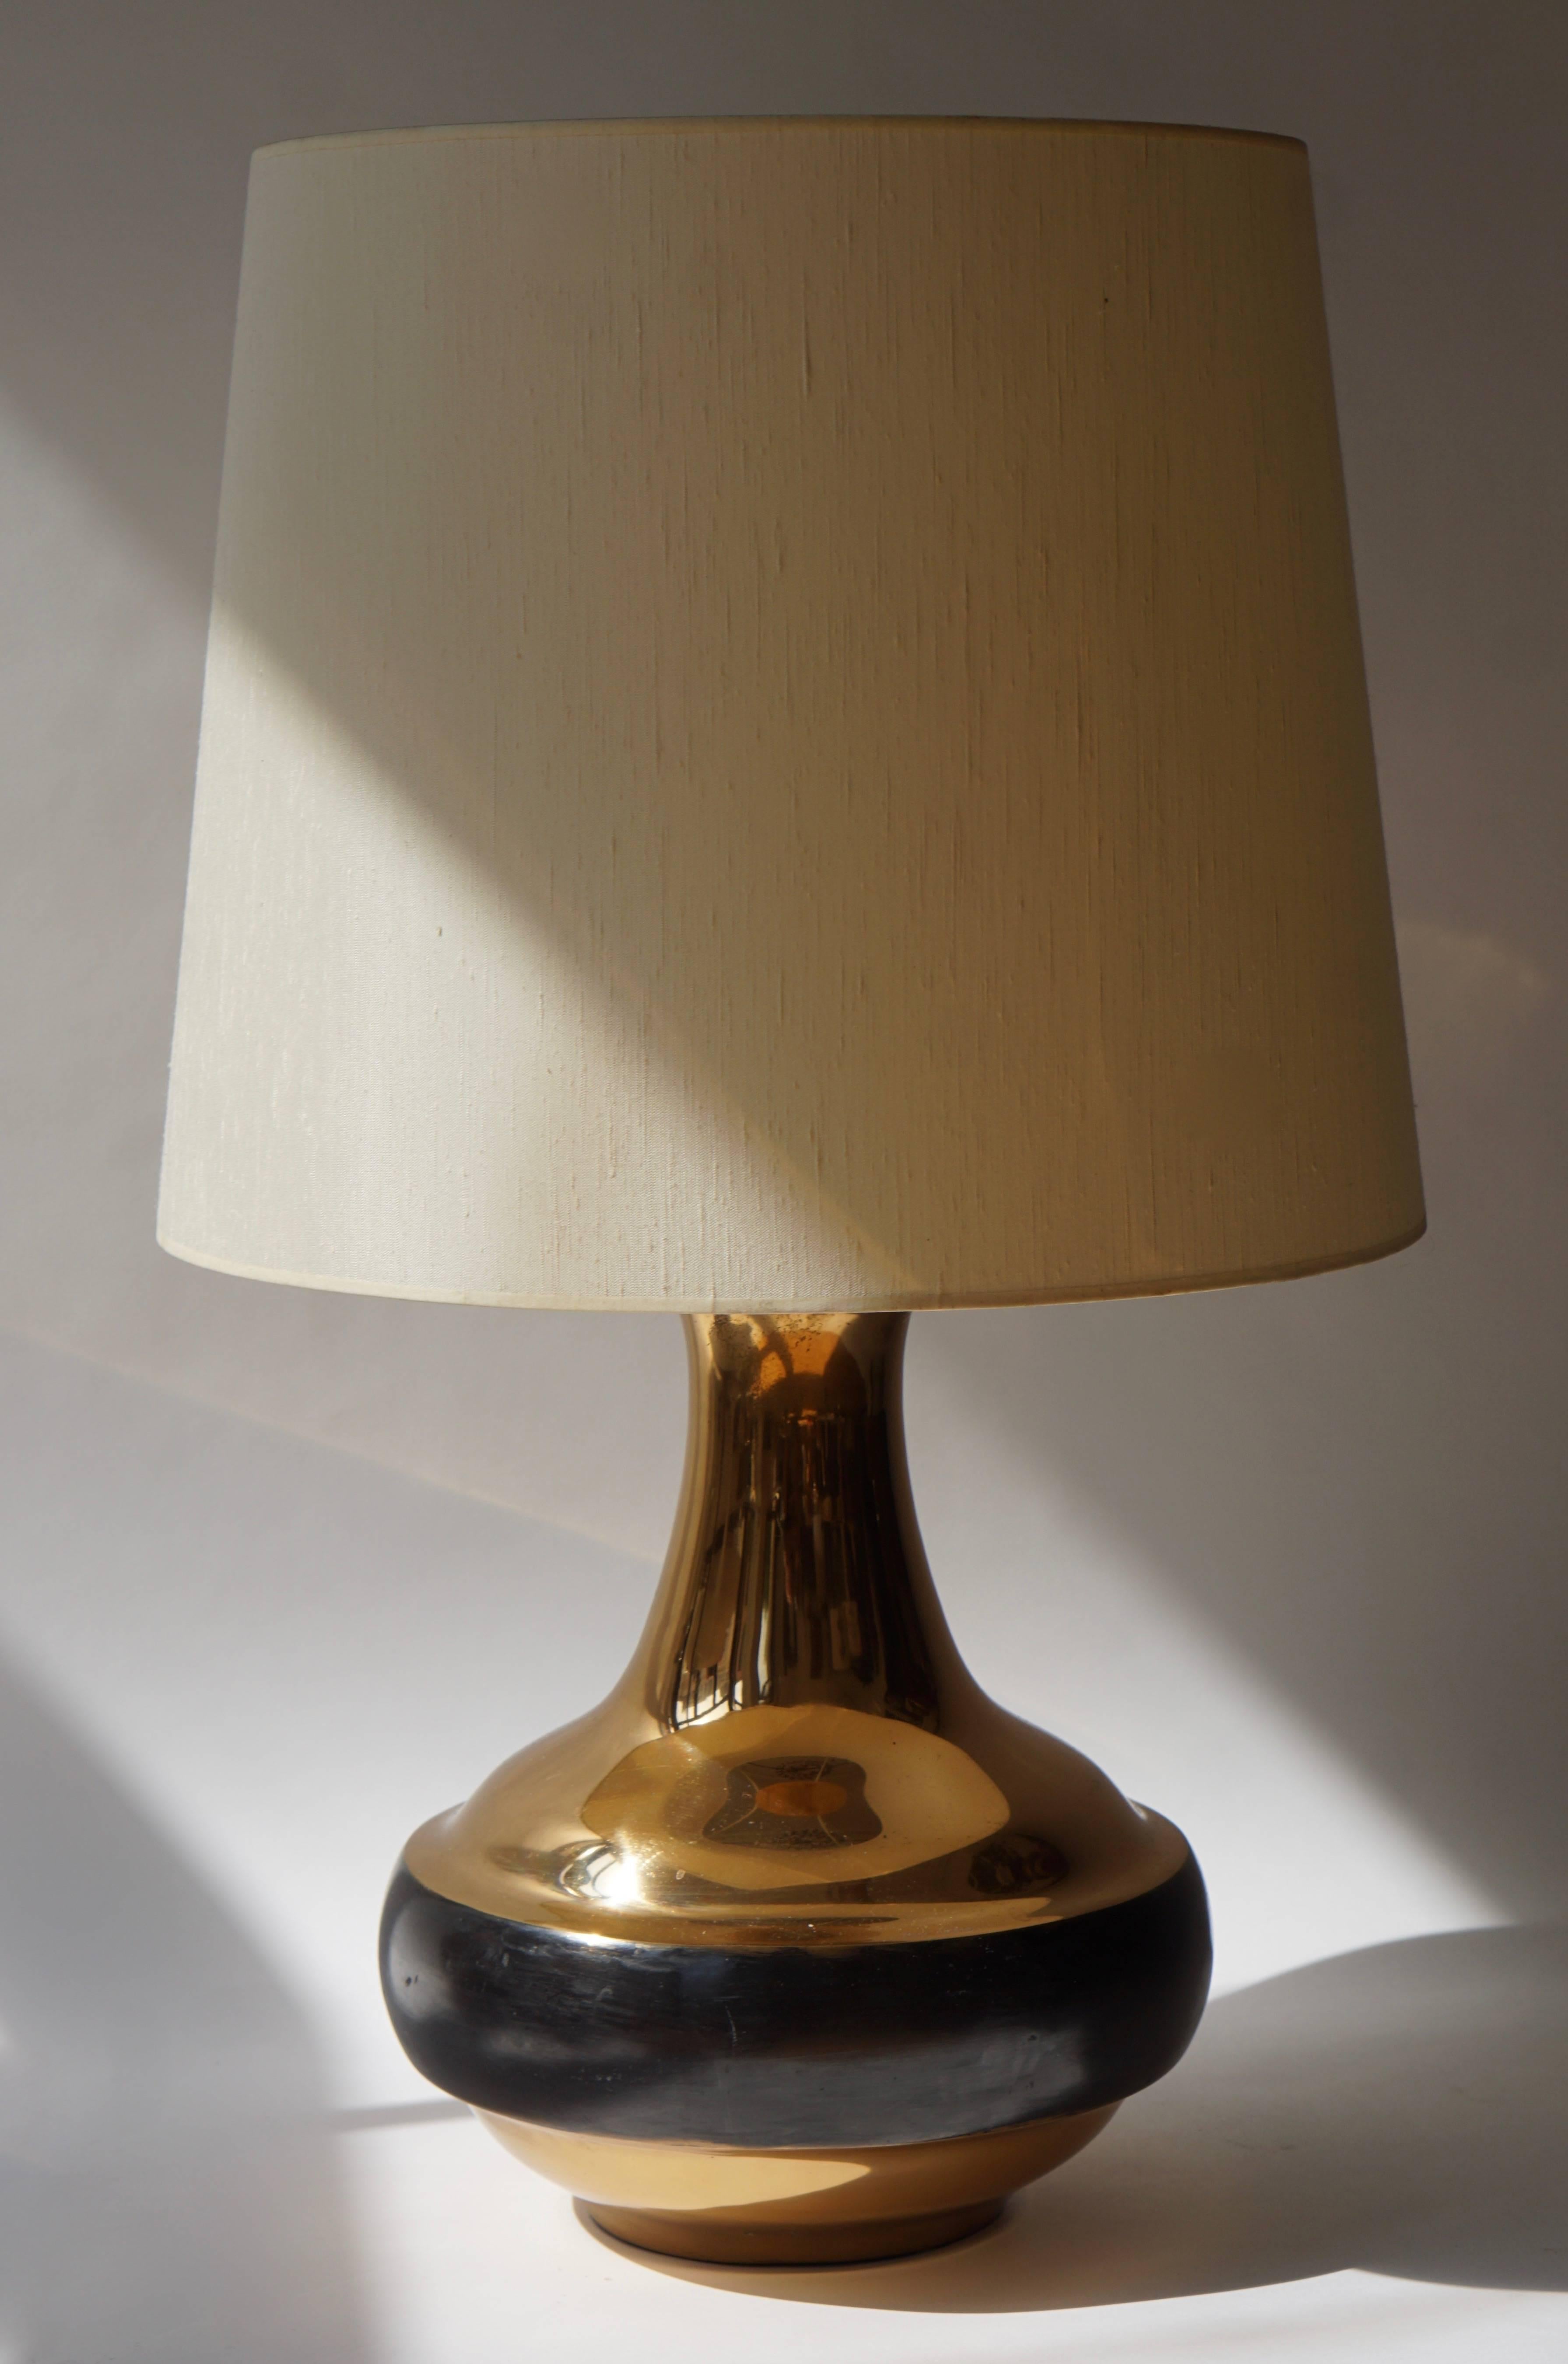 Lampe de table ou lampadaire italien par Bruno Gambone.
Mesures : Diamètre 83 cm.
Hauteur 50 cm.
Hauteur de la base 40 cm.
Diamètre de la base 33 cm.
Poids de base : 12 kg.
Les teintes présentées sont uniquement destinées à des fins de démonstration.